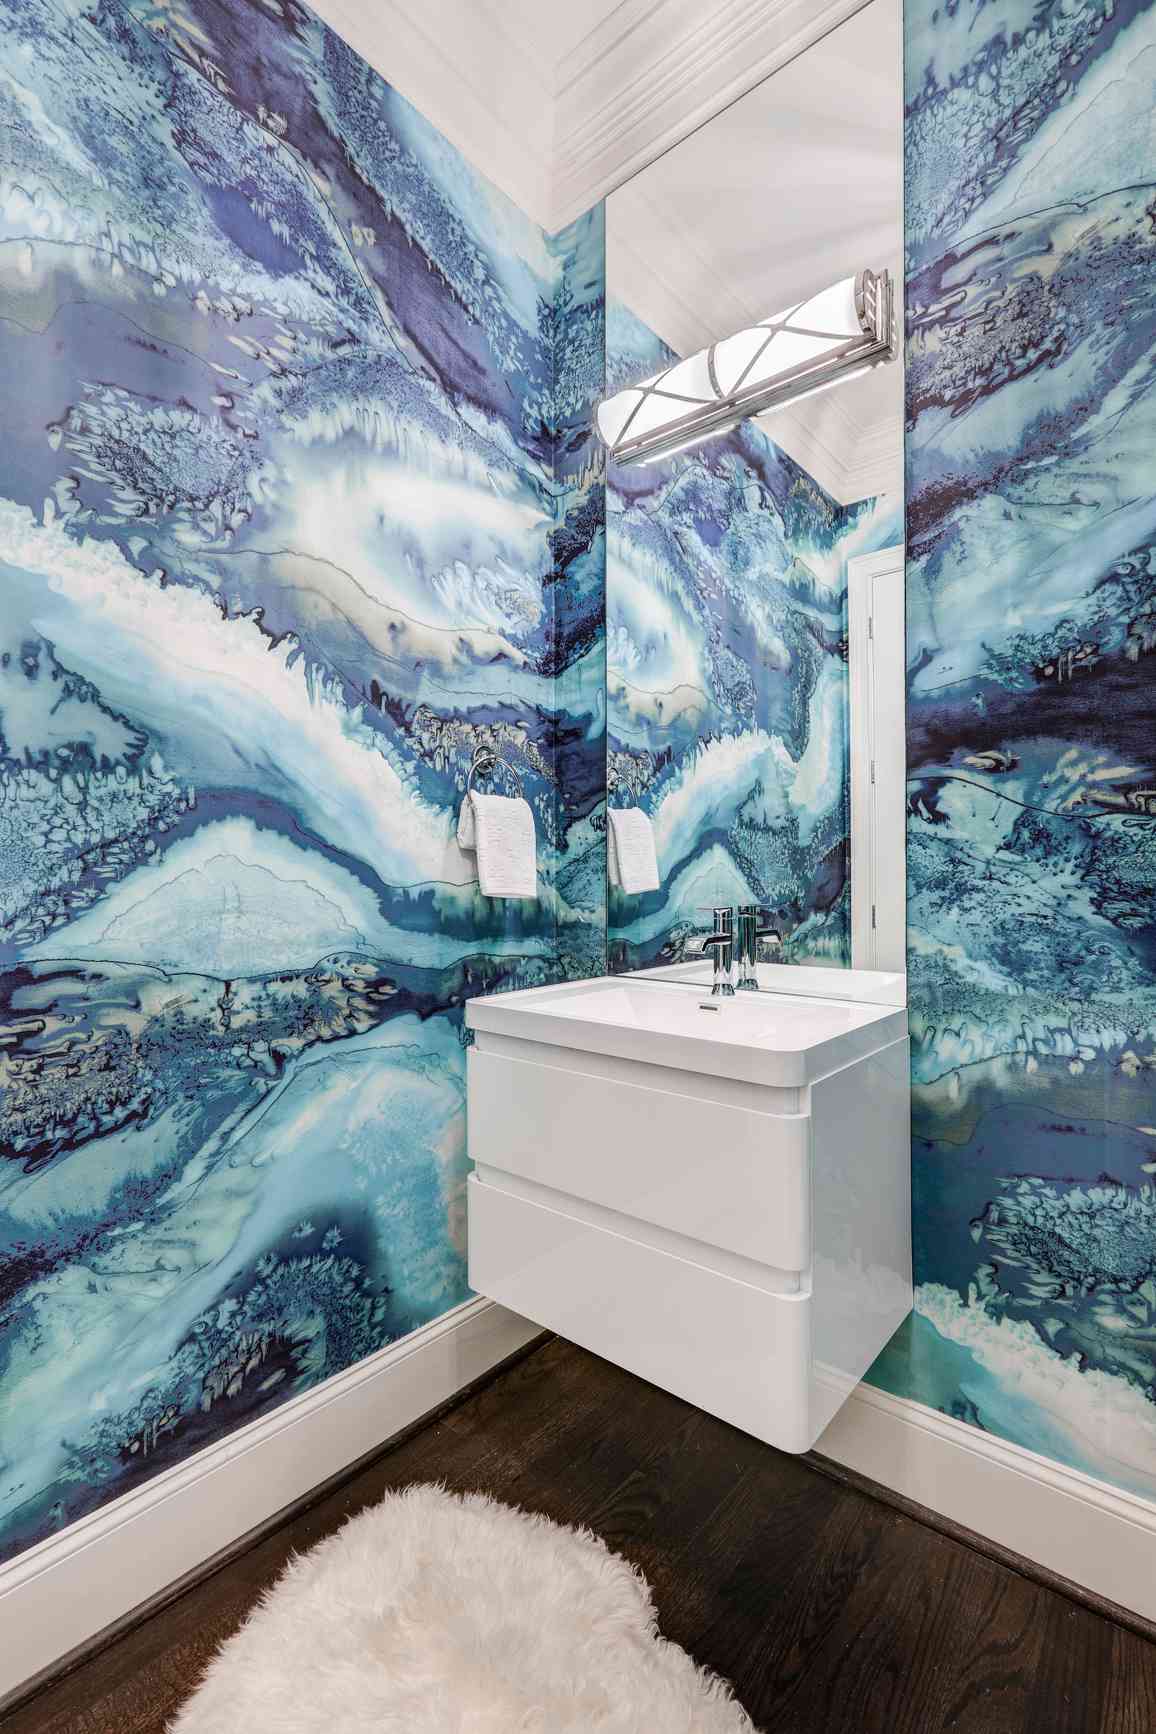 Papier peint d'inspiration océanique dans une salle de bain nautique